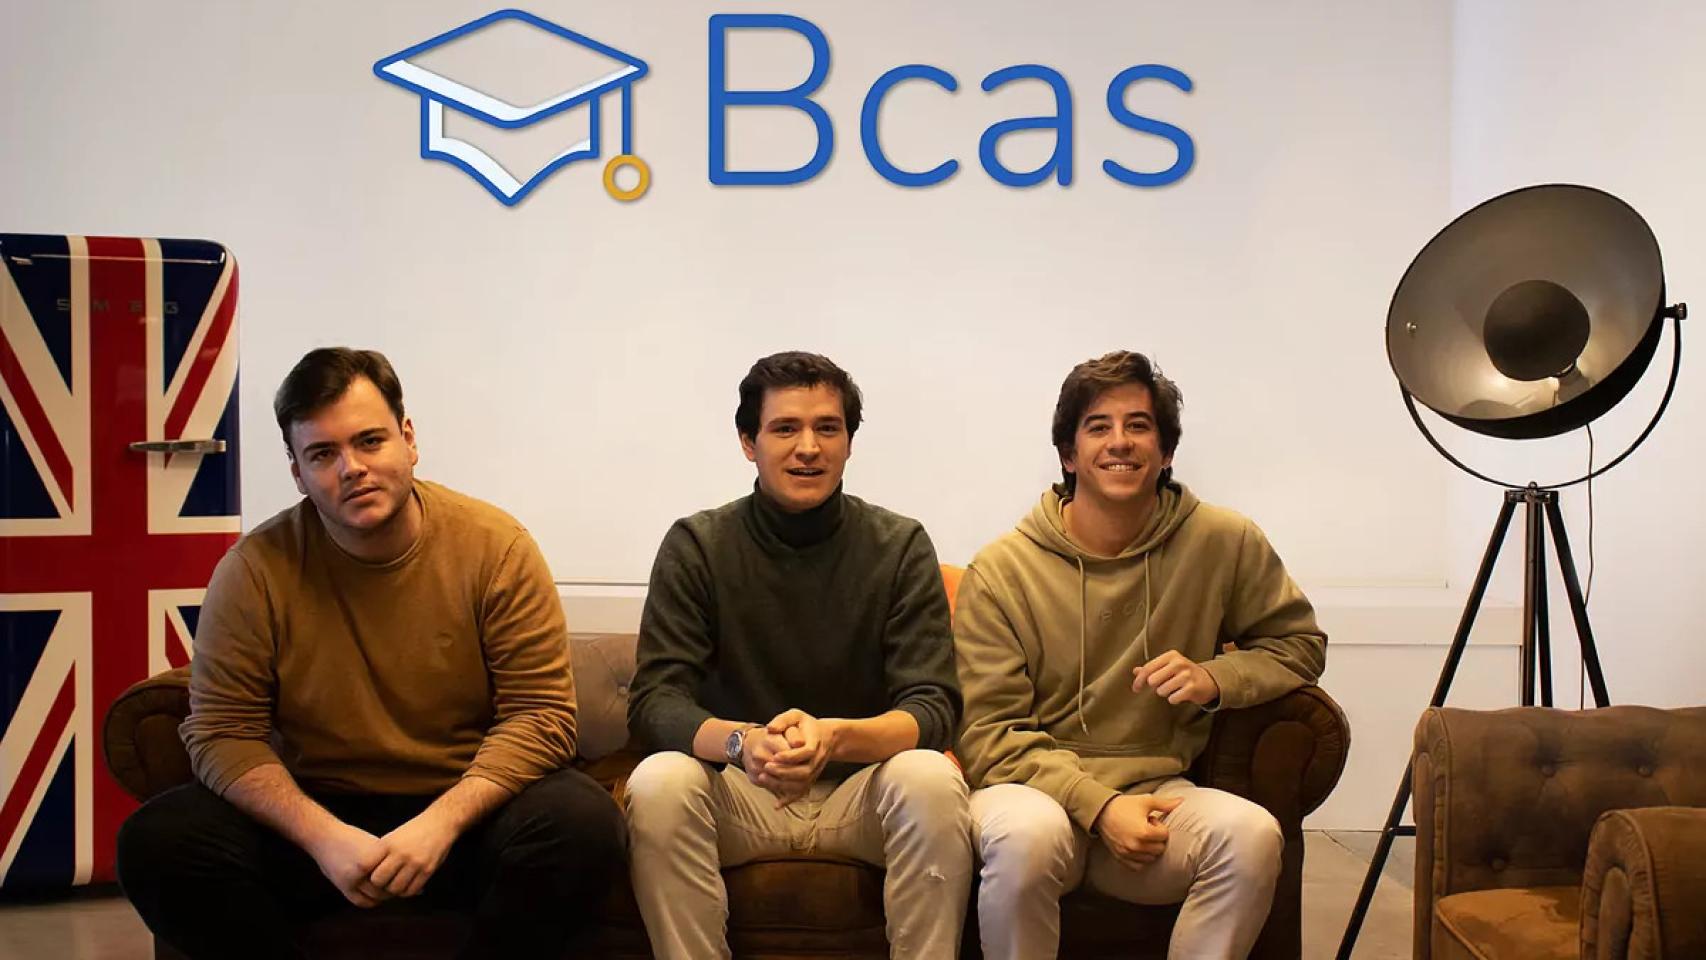 Javier Ausin, Bosco González del Valle y Manuel Avello, cofundadores de la startup Bcas.